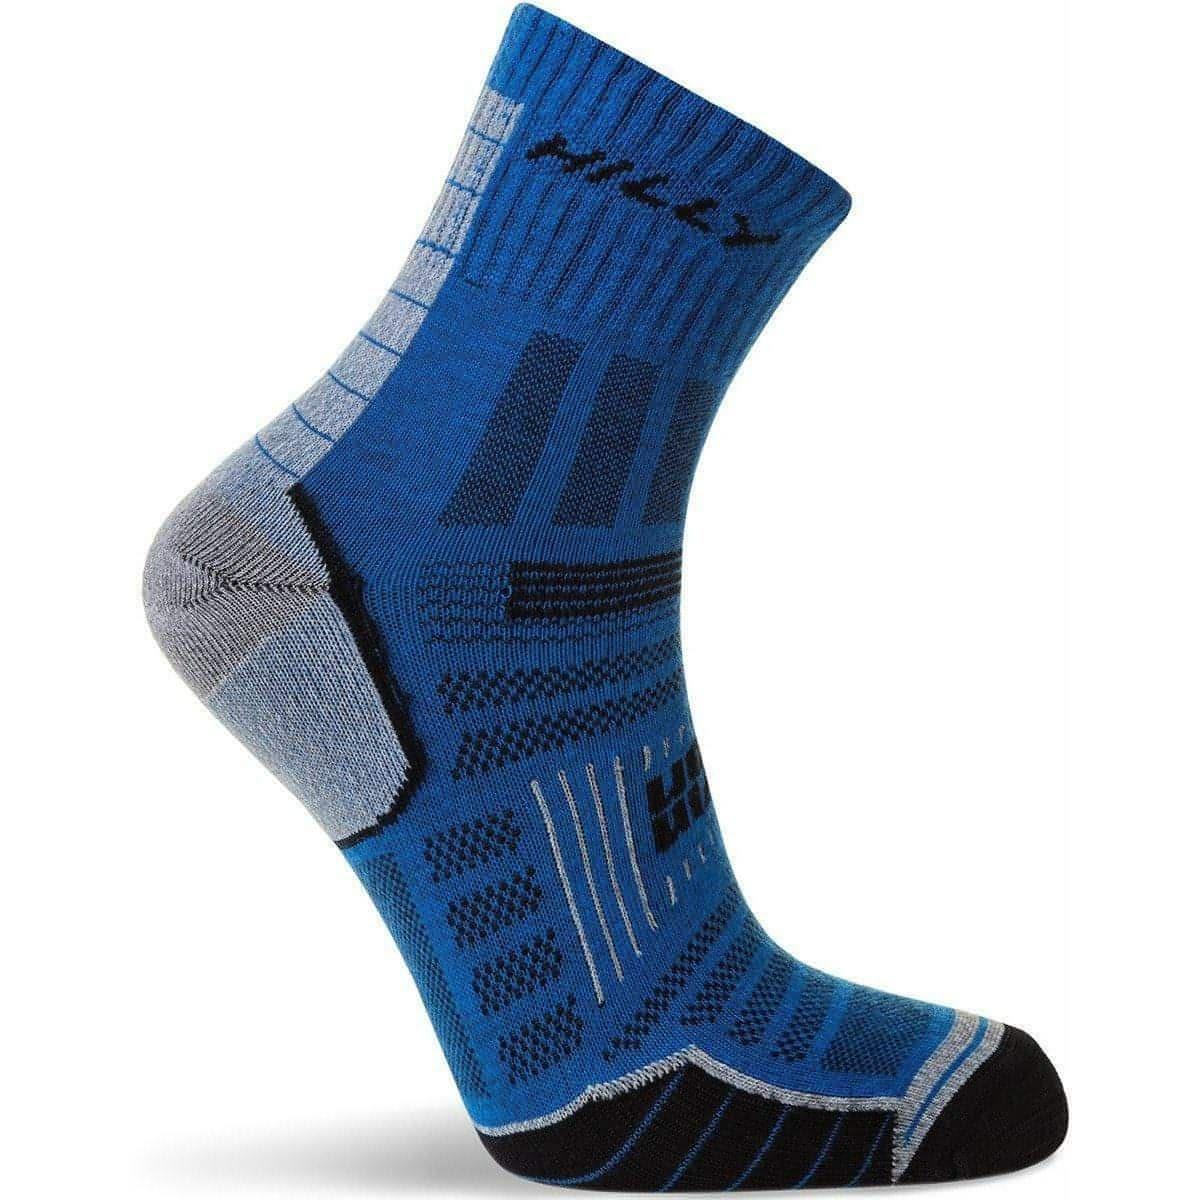 Hilly Twin Skin Anklet Running Socks - Blue 5060148538396 - Start Fitness